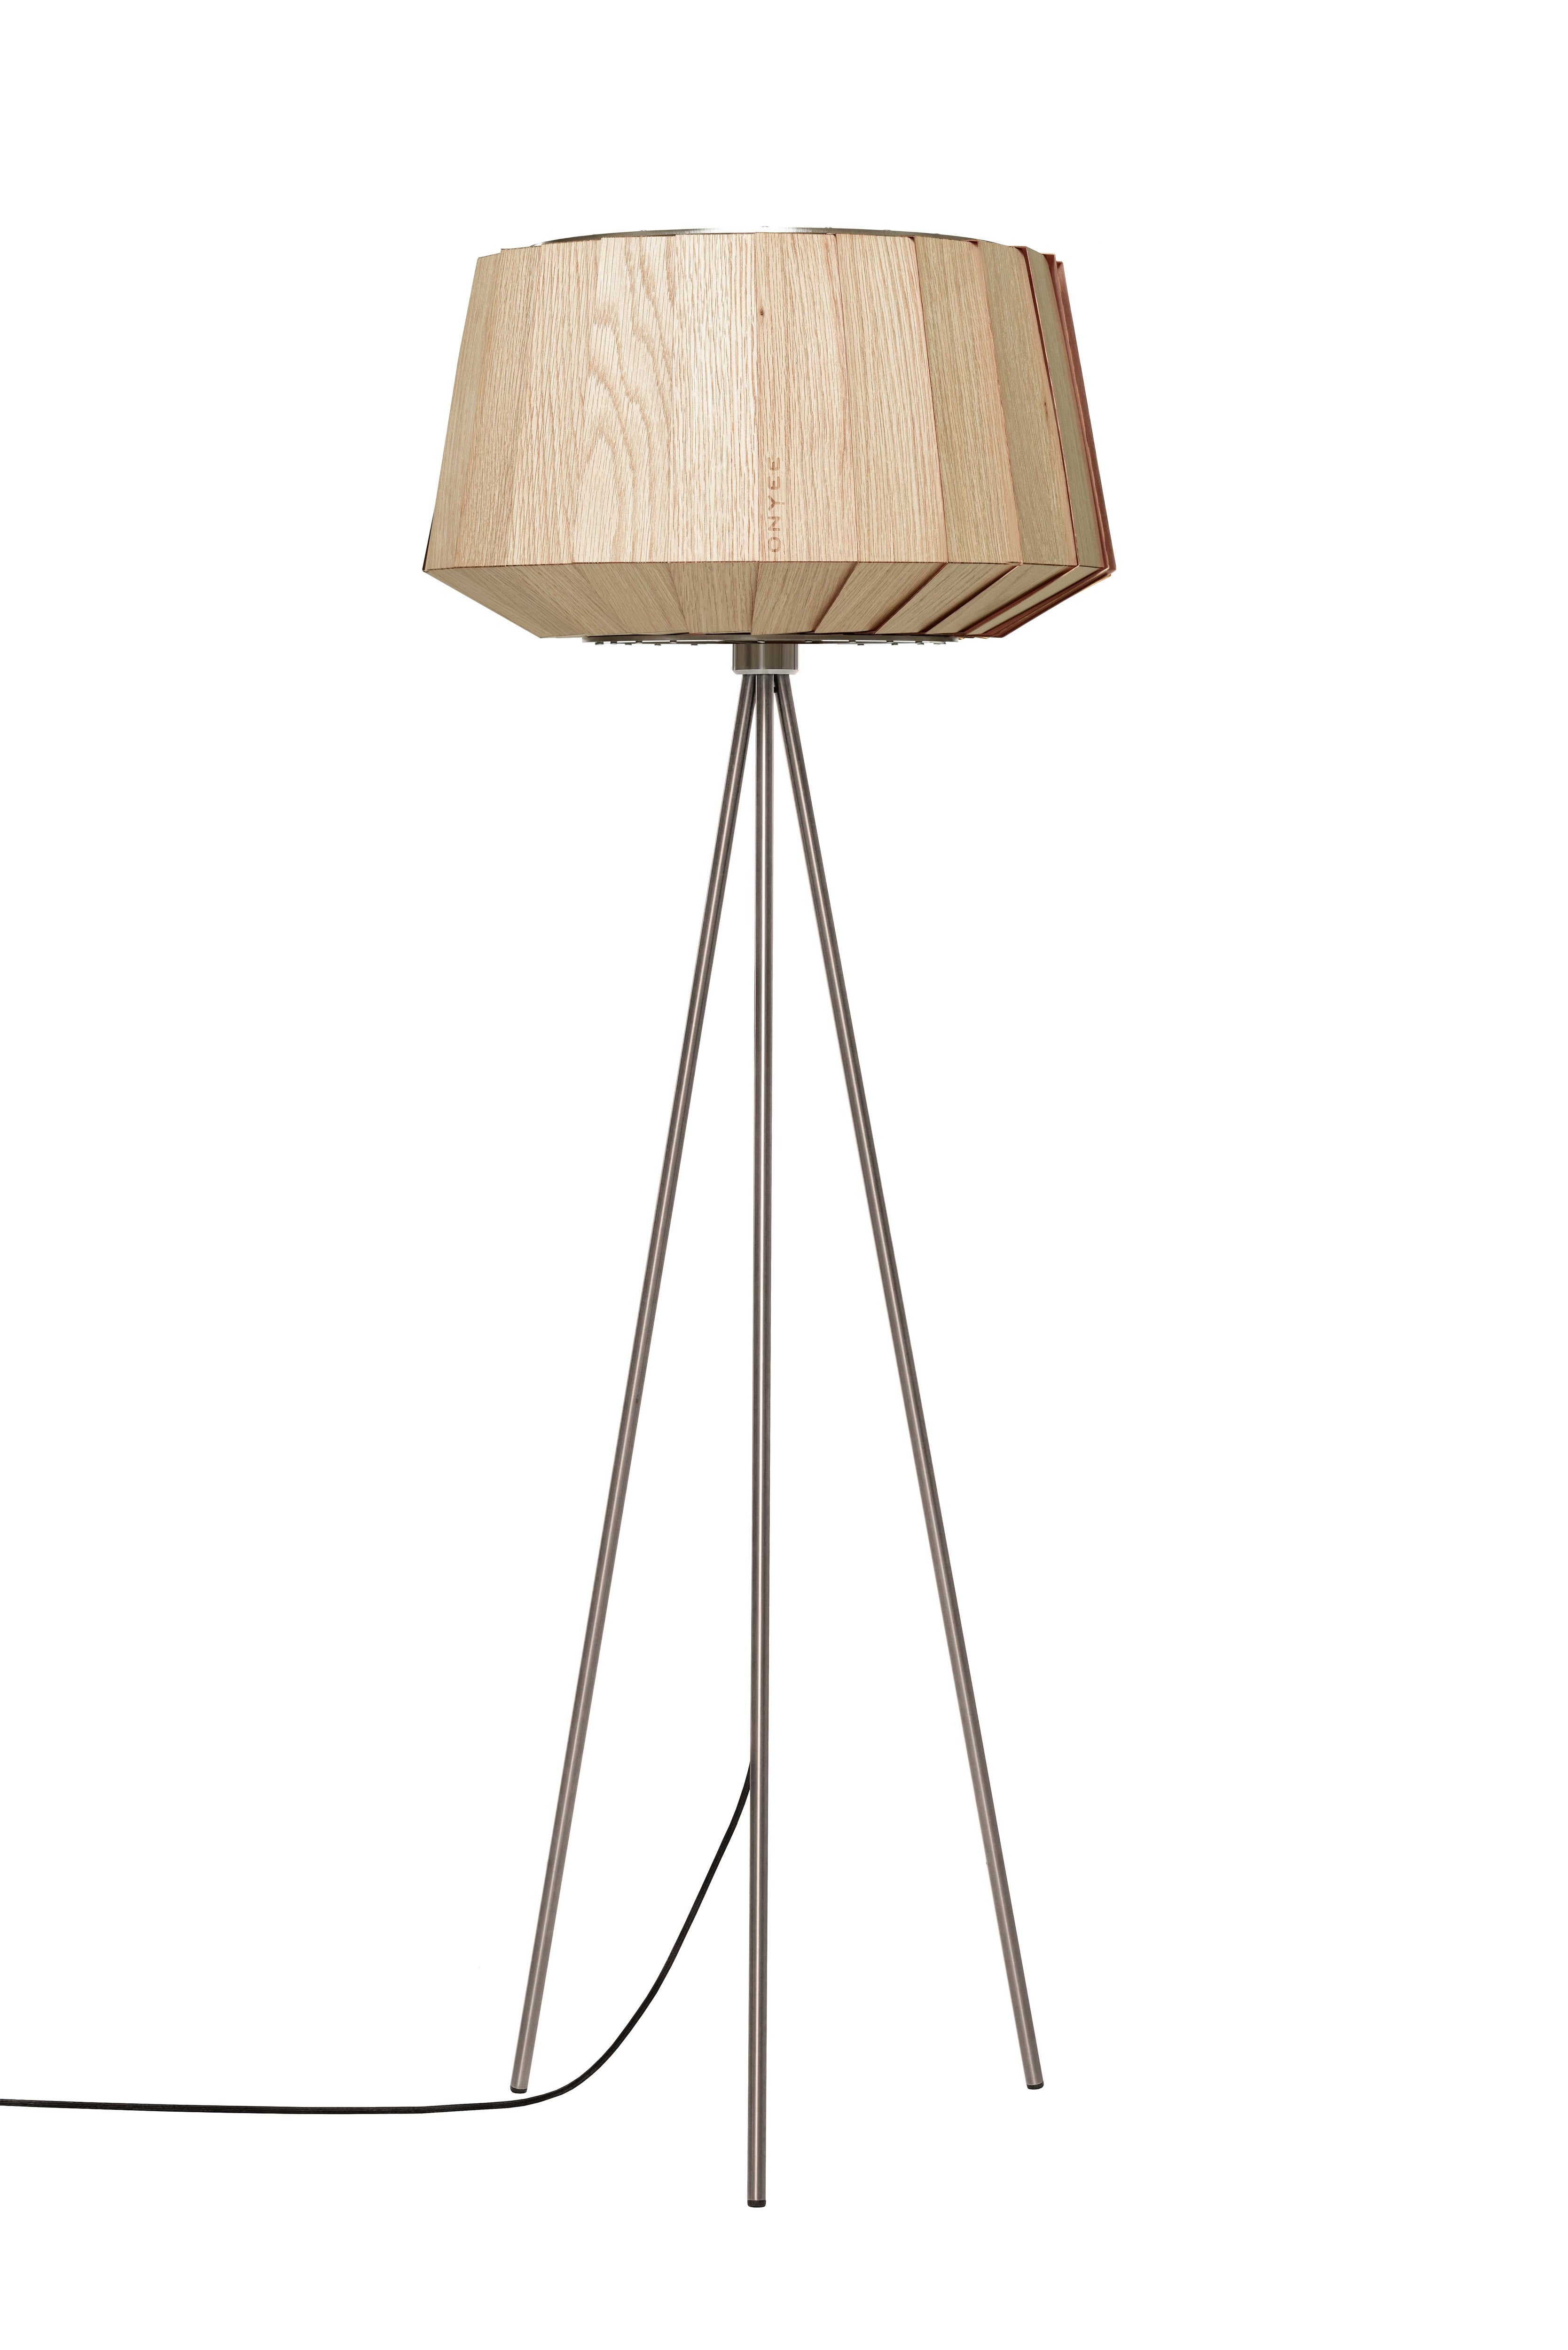 Moderne filigrane Holz Stehlampe in Eiche natur mit Lampenfuß aus gebürstetem Edelstahl